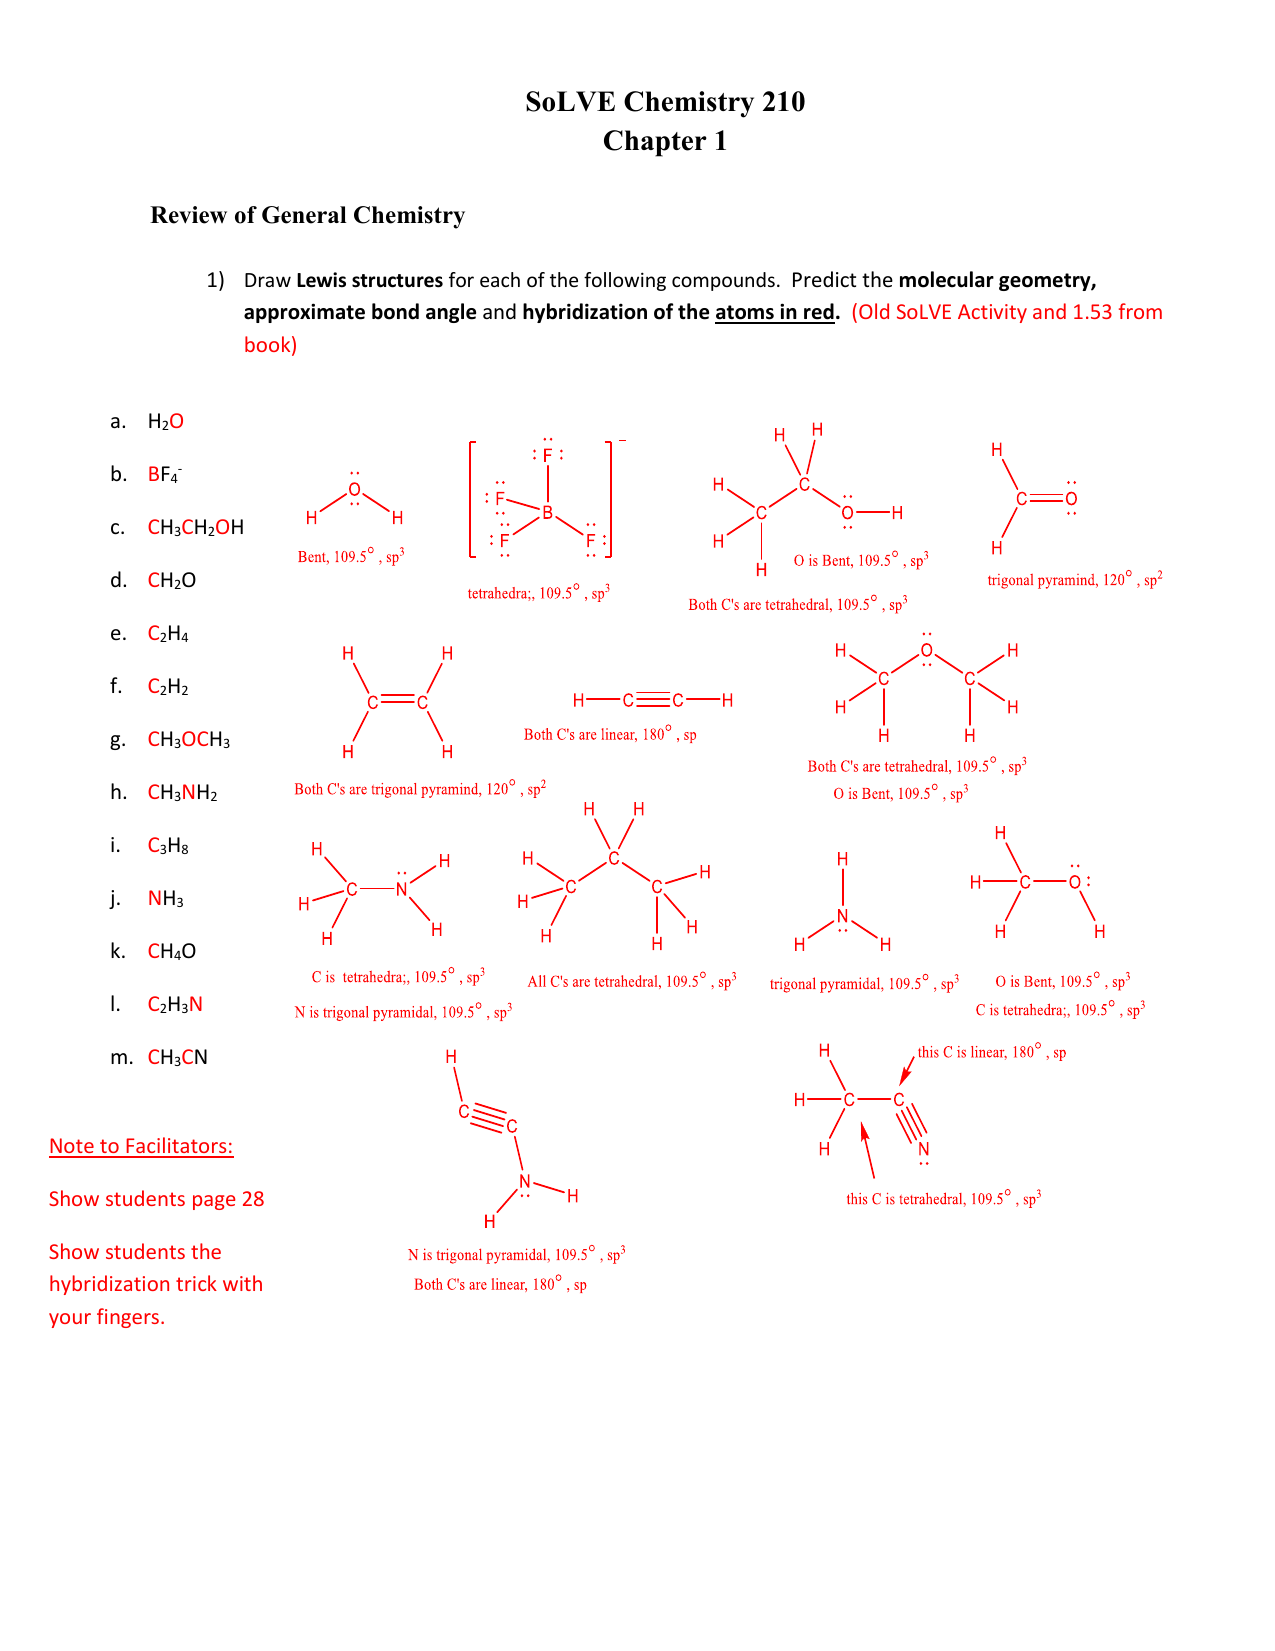 ch2o molecular geometry 2d drawing